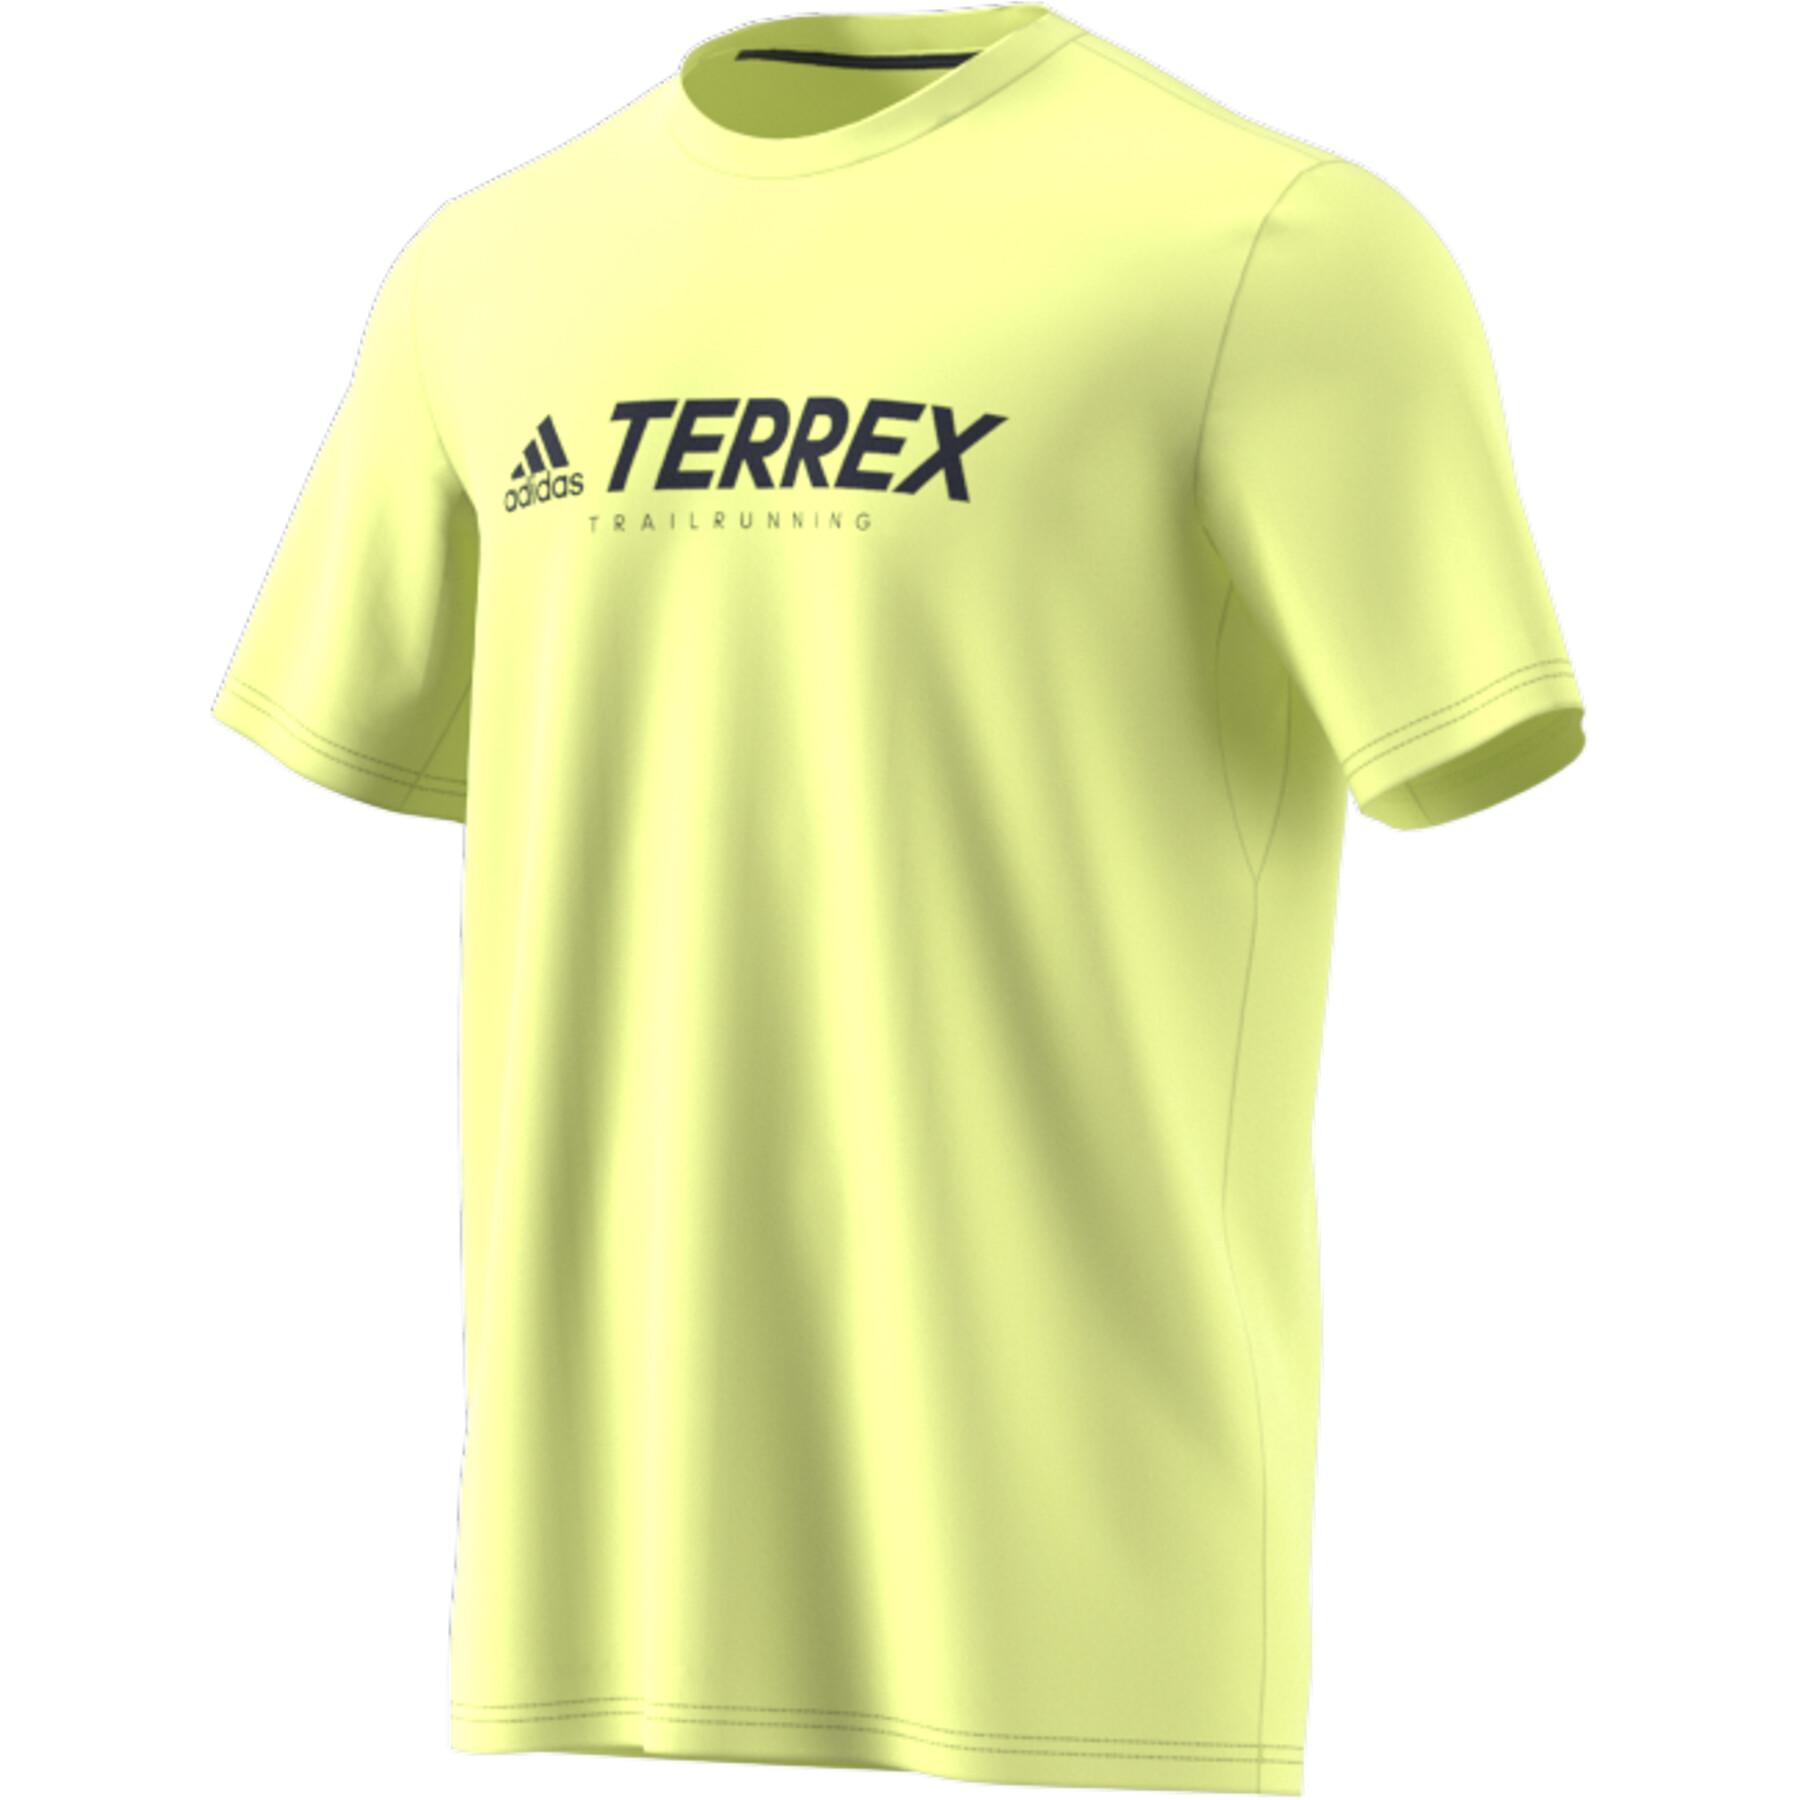 T-shirt adidas Terrex Primeblue Trilho Functional Logo